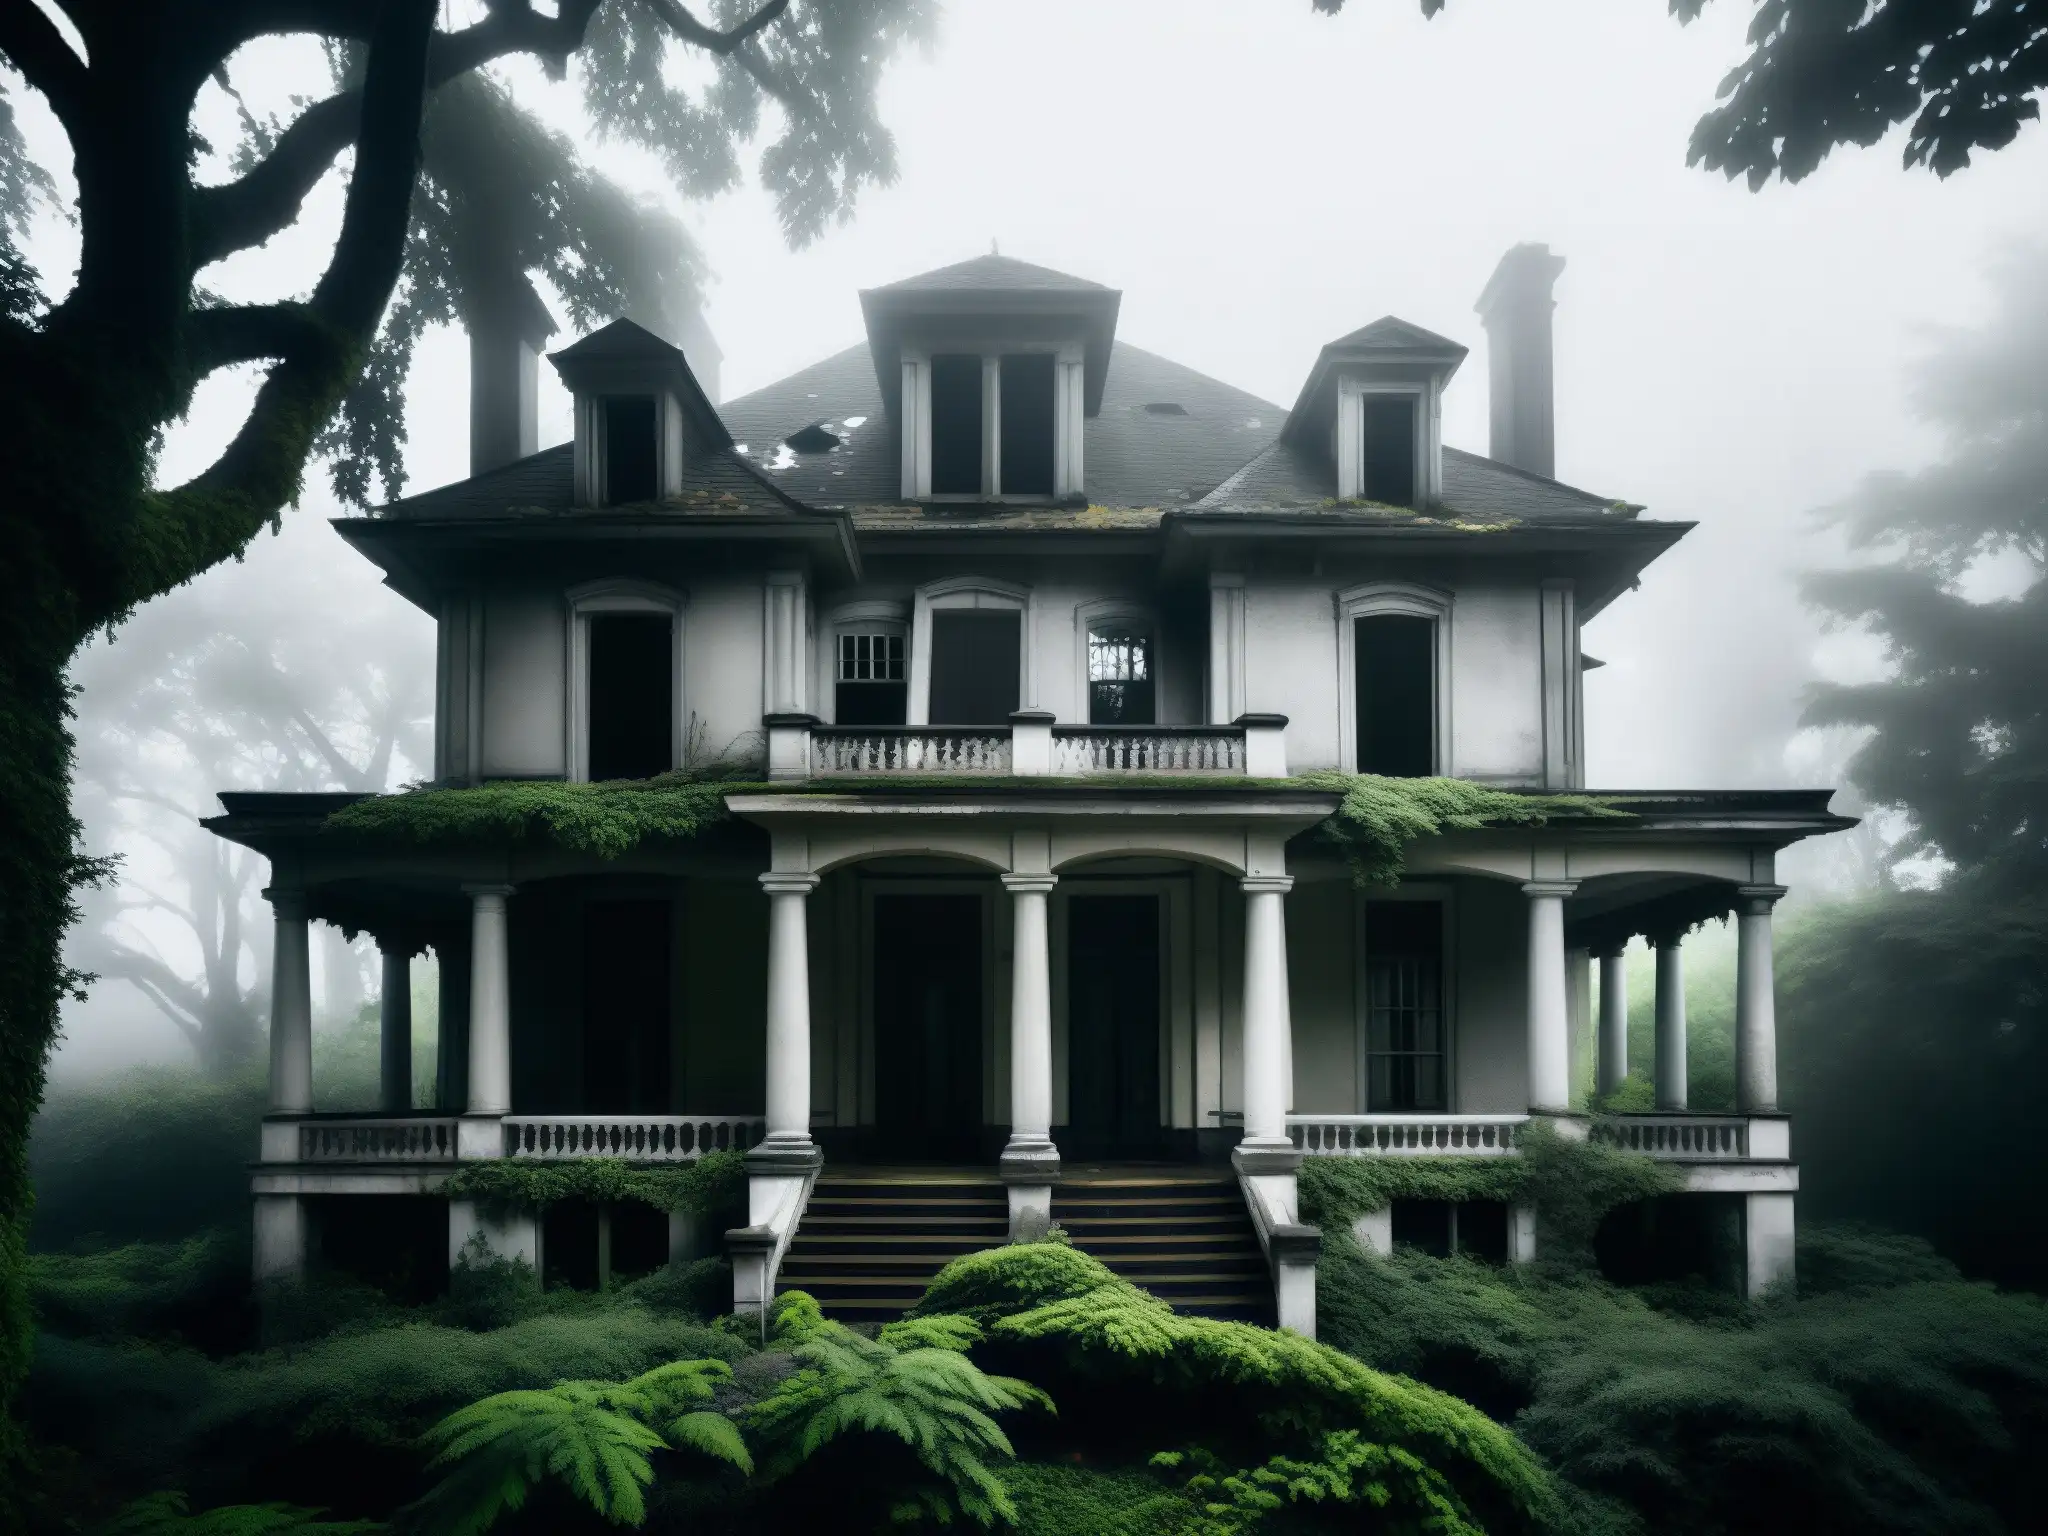 Imagen en blanco y negro de una mansión abandonada, rodeada de árboles descuidados y niebla